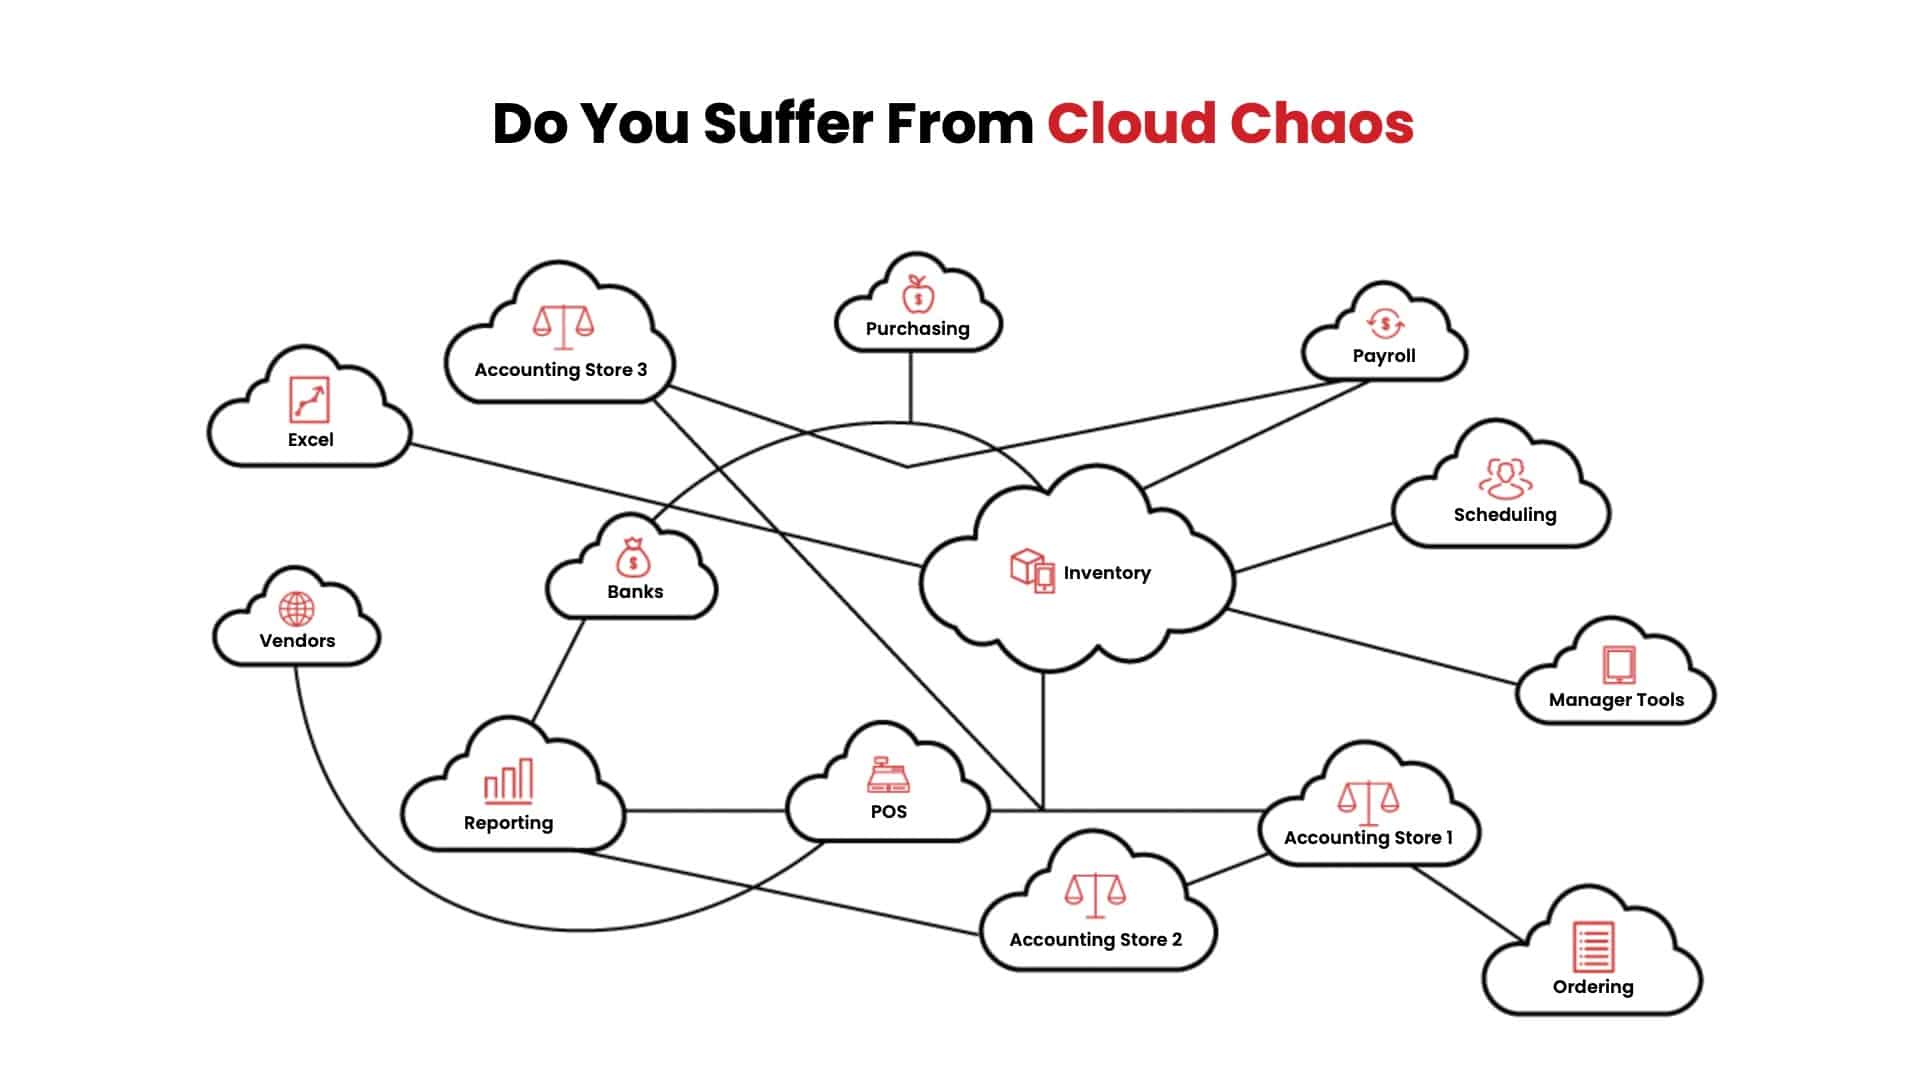 Do You Suffer From Cloud Choas